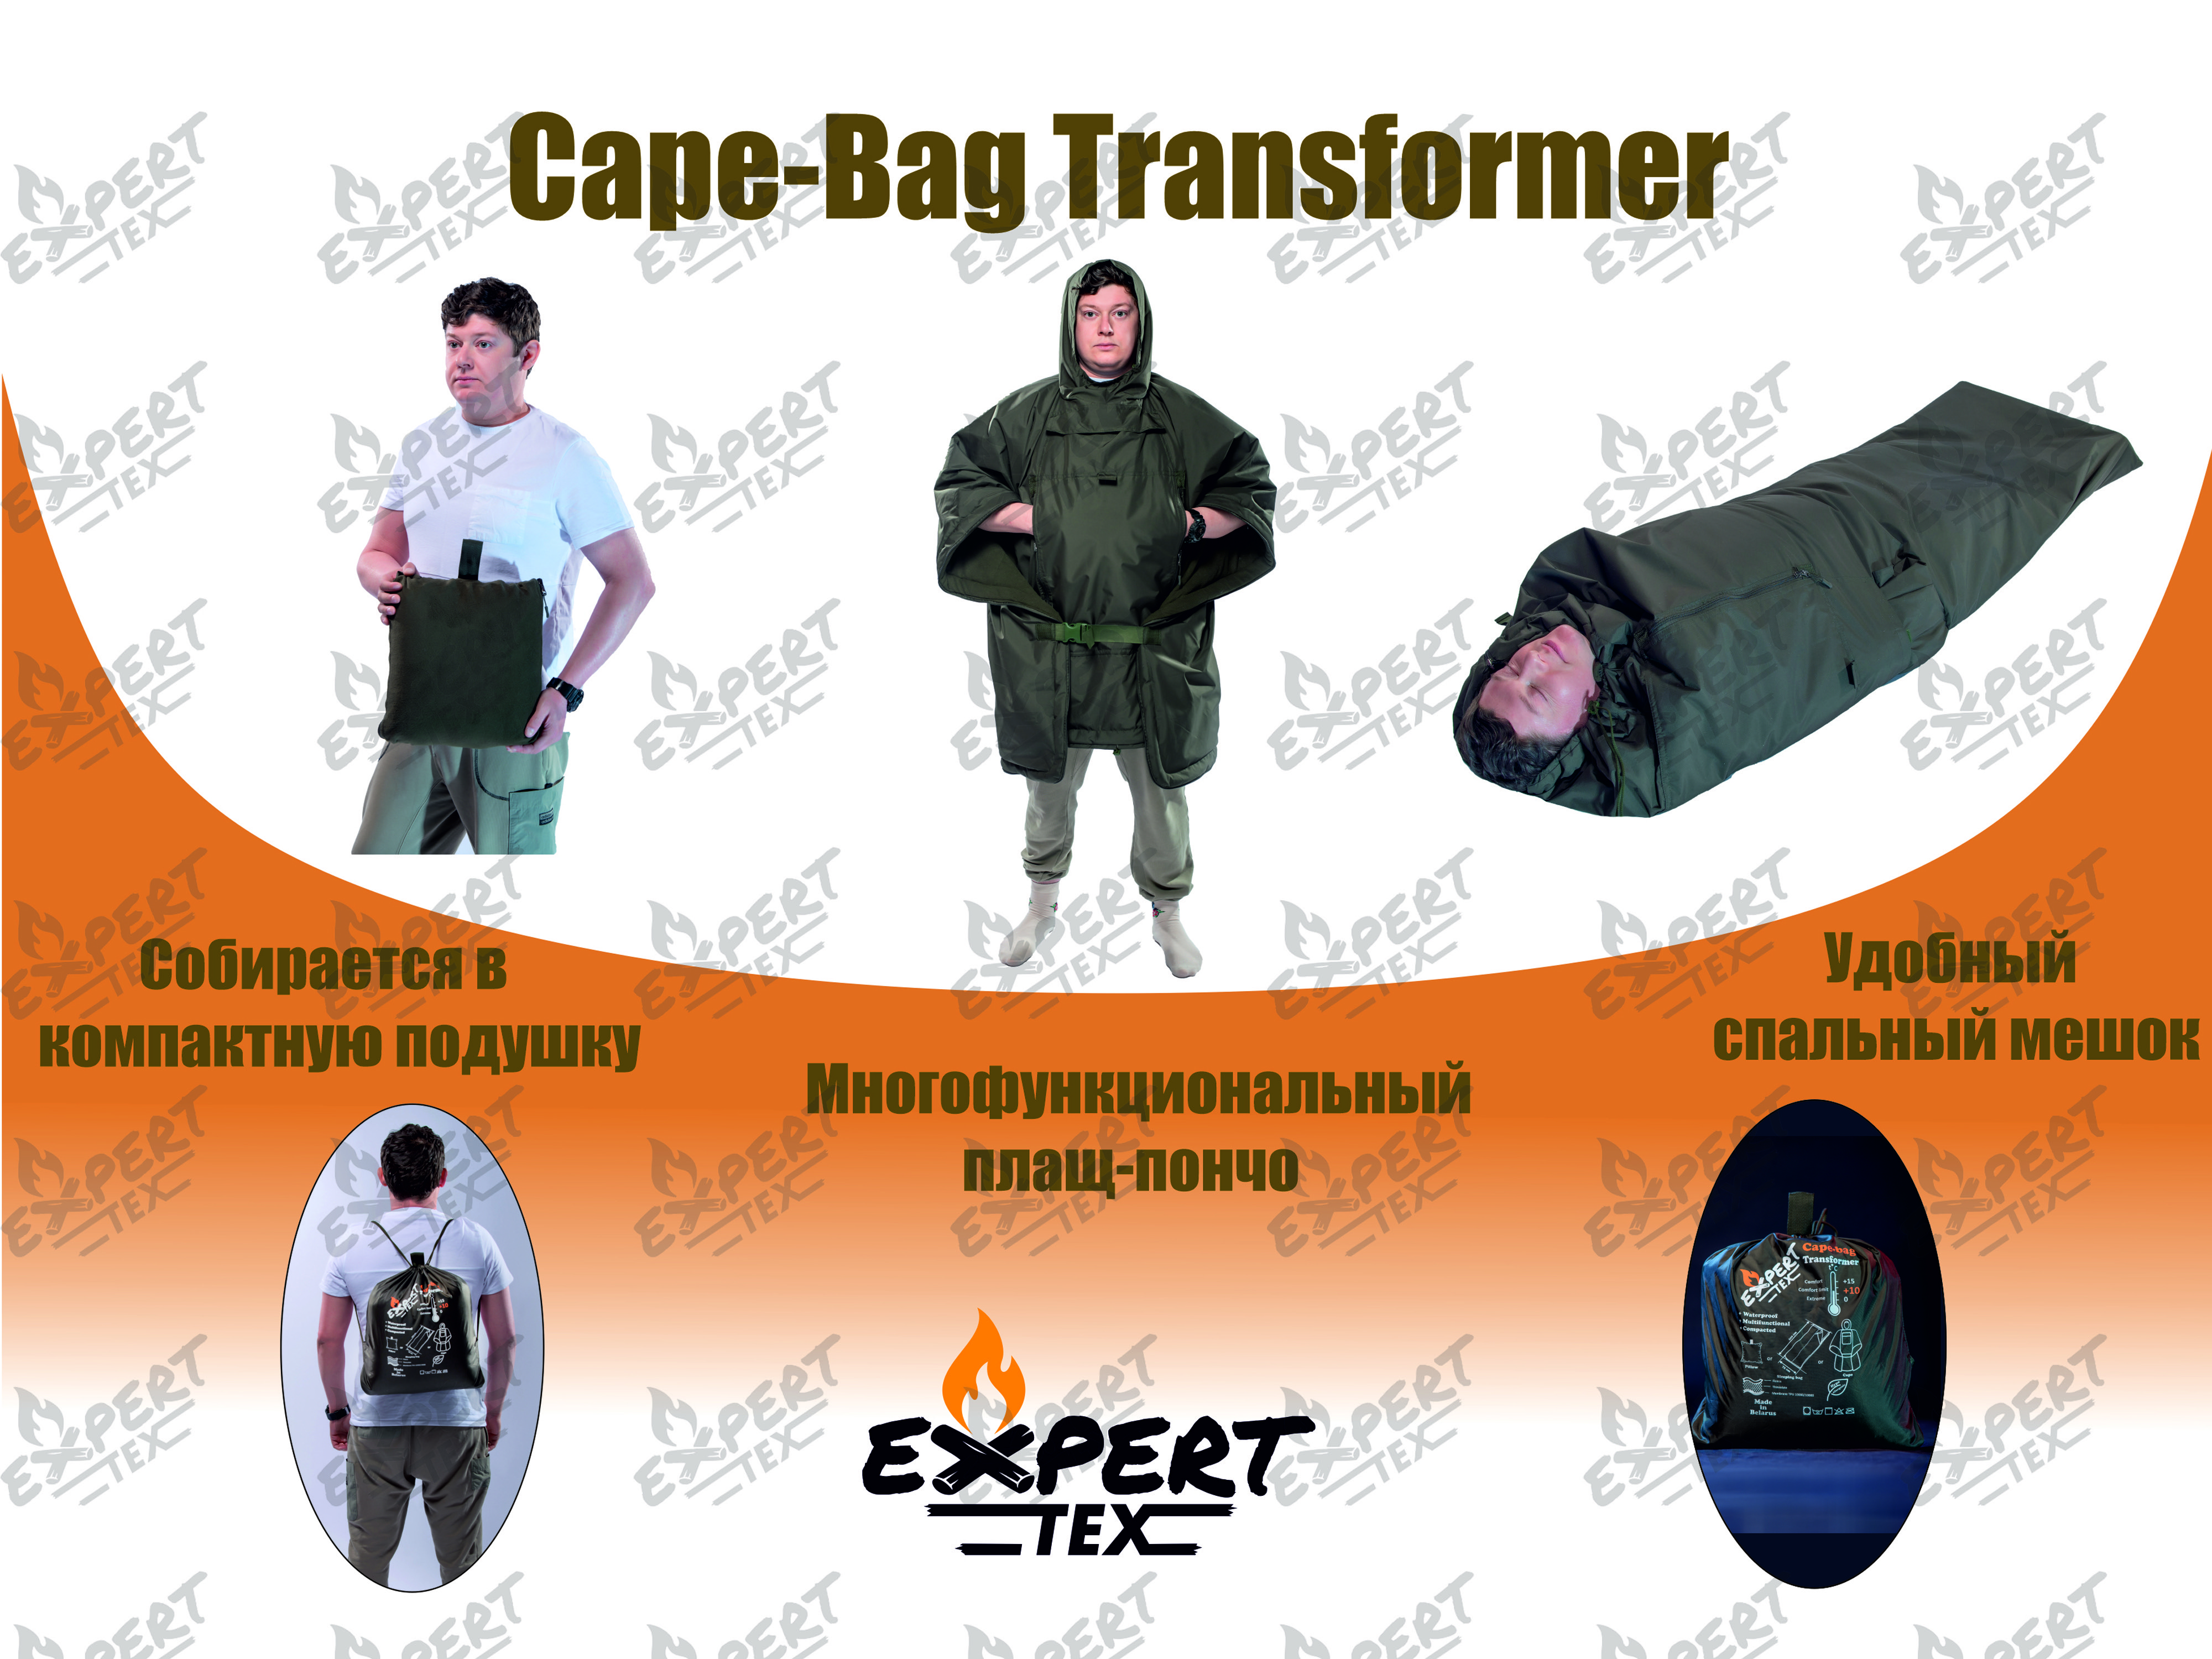 Спальный мешок EXPERT TEX Мод.CAPE-BAG